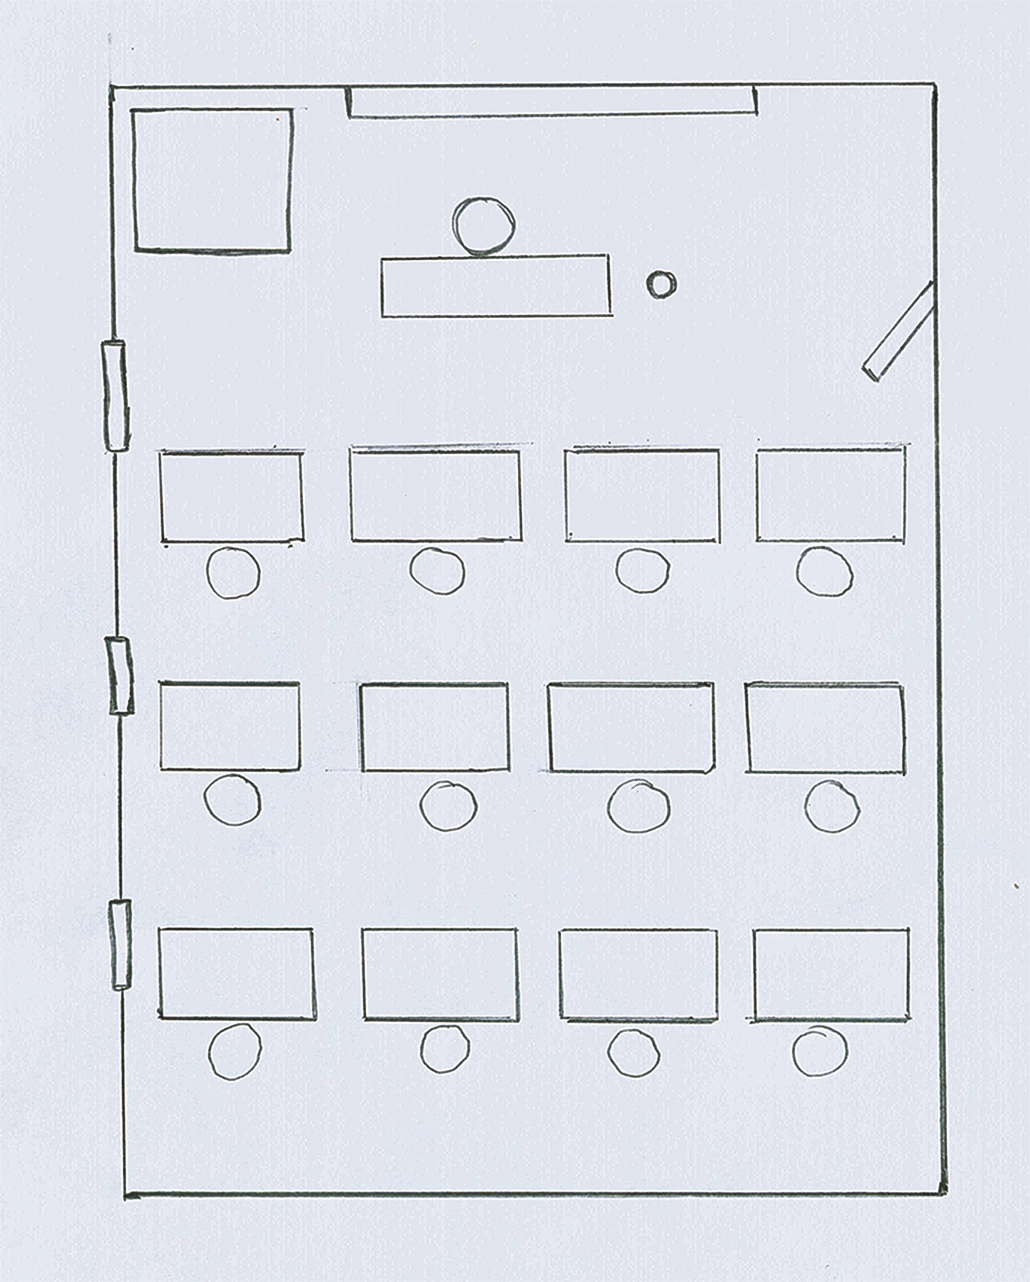 Ilustração. Desenho de uma sala de aula com janelas à esquerda, a lousa, um armário e a mesa do professor na parte superior. Abaixo, as carteiras escolares.